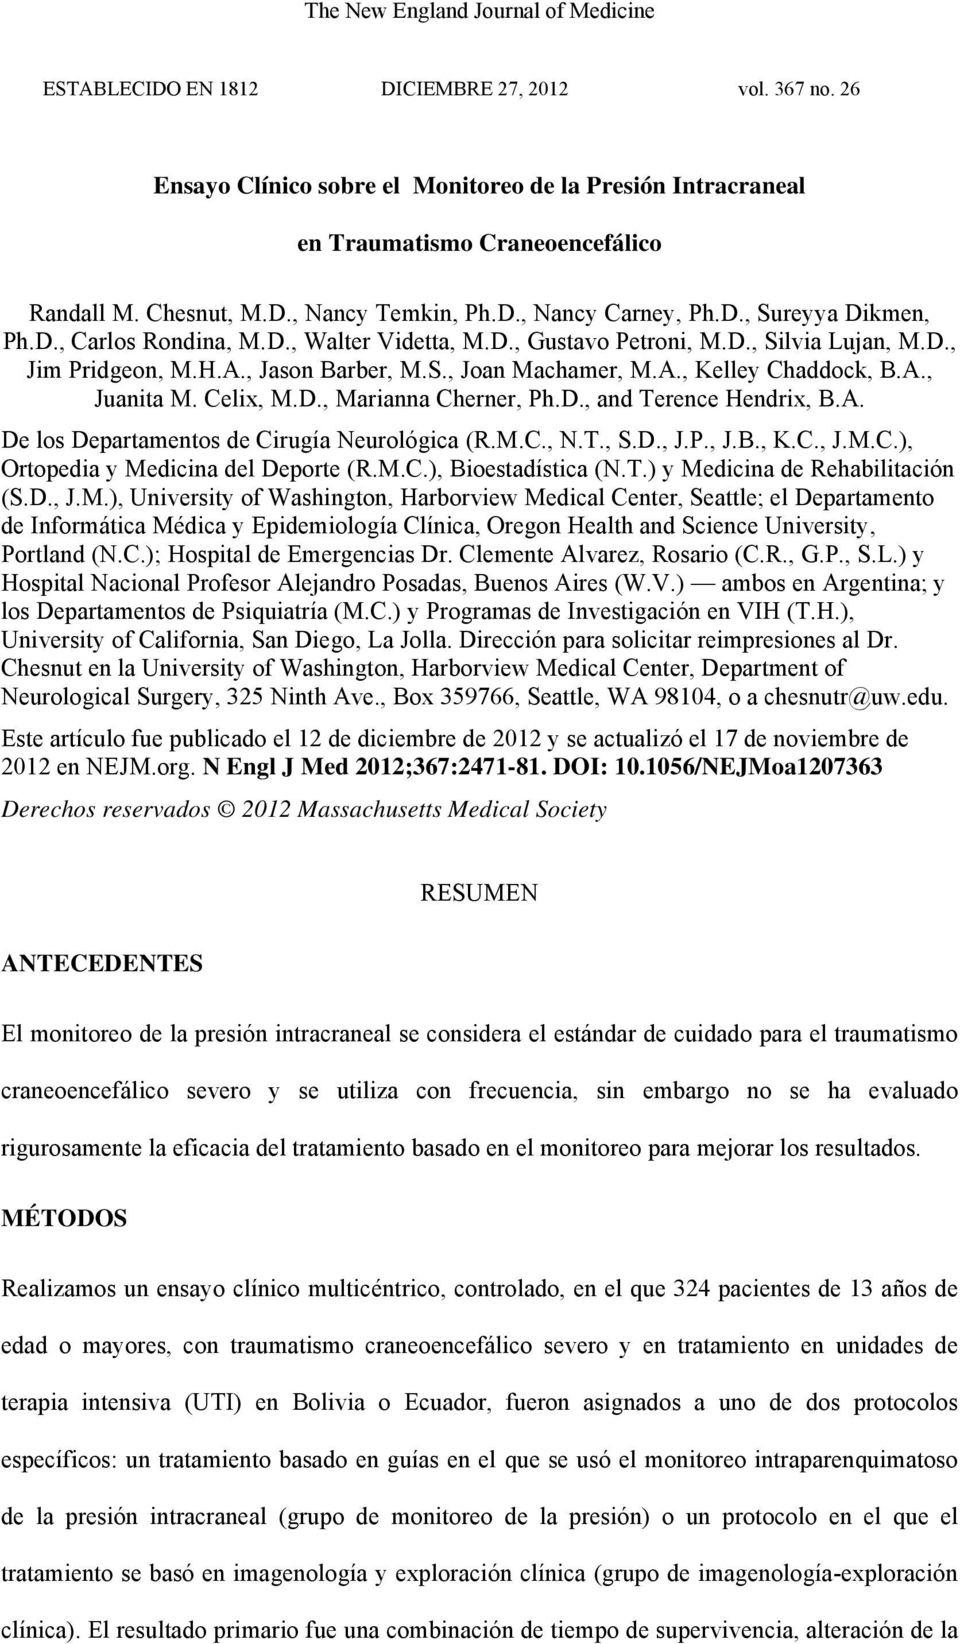 Celix, M.D., Marianna Cherner, Ph.D., and Terence Hendrix, B.A. De los Departamentos de Cirugía Neurológica (R.M.C., N.T., S.D., J.P., J.B., K.C., J.M.C.), Ortopedia y Medicina del Deporte (R.M.C.), Bioestadística (N.